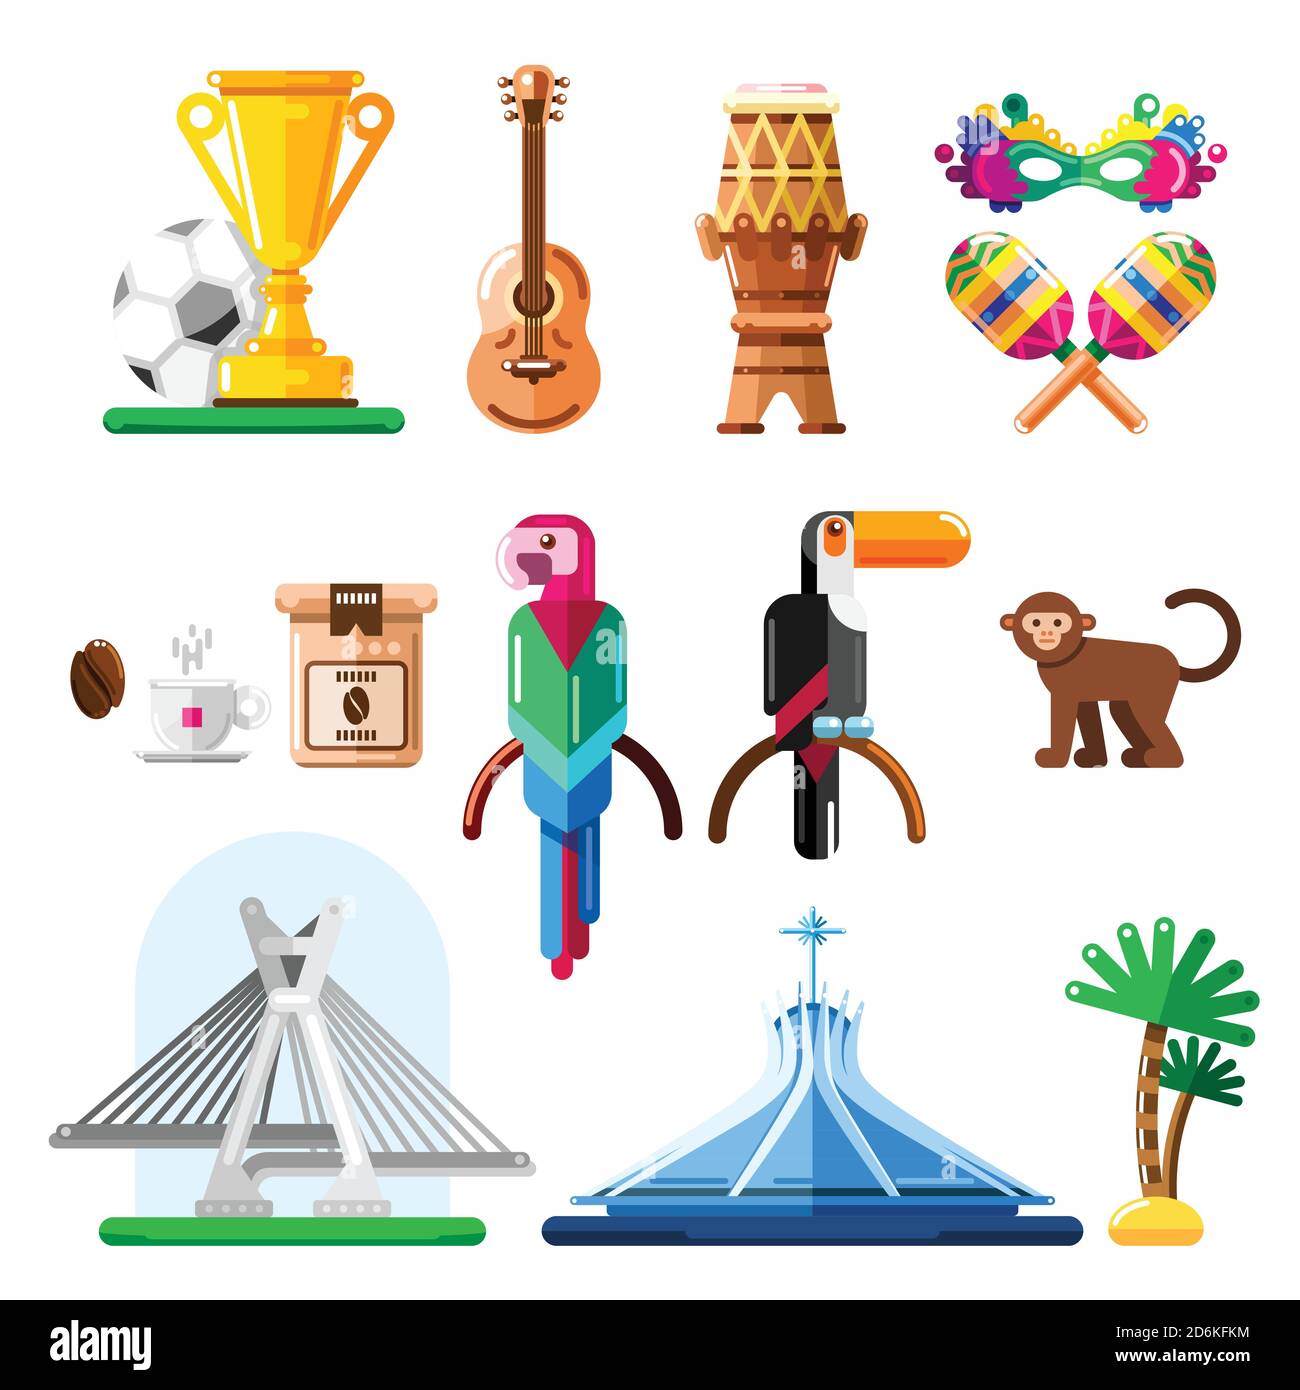 Reisen Sie nach Brasilien Vektor-Icons und Design-Elemente. Brasilianische nationale Symbole und Wahrzeichen flache Illustration. Stock Vektor